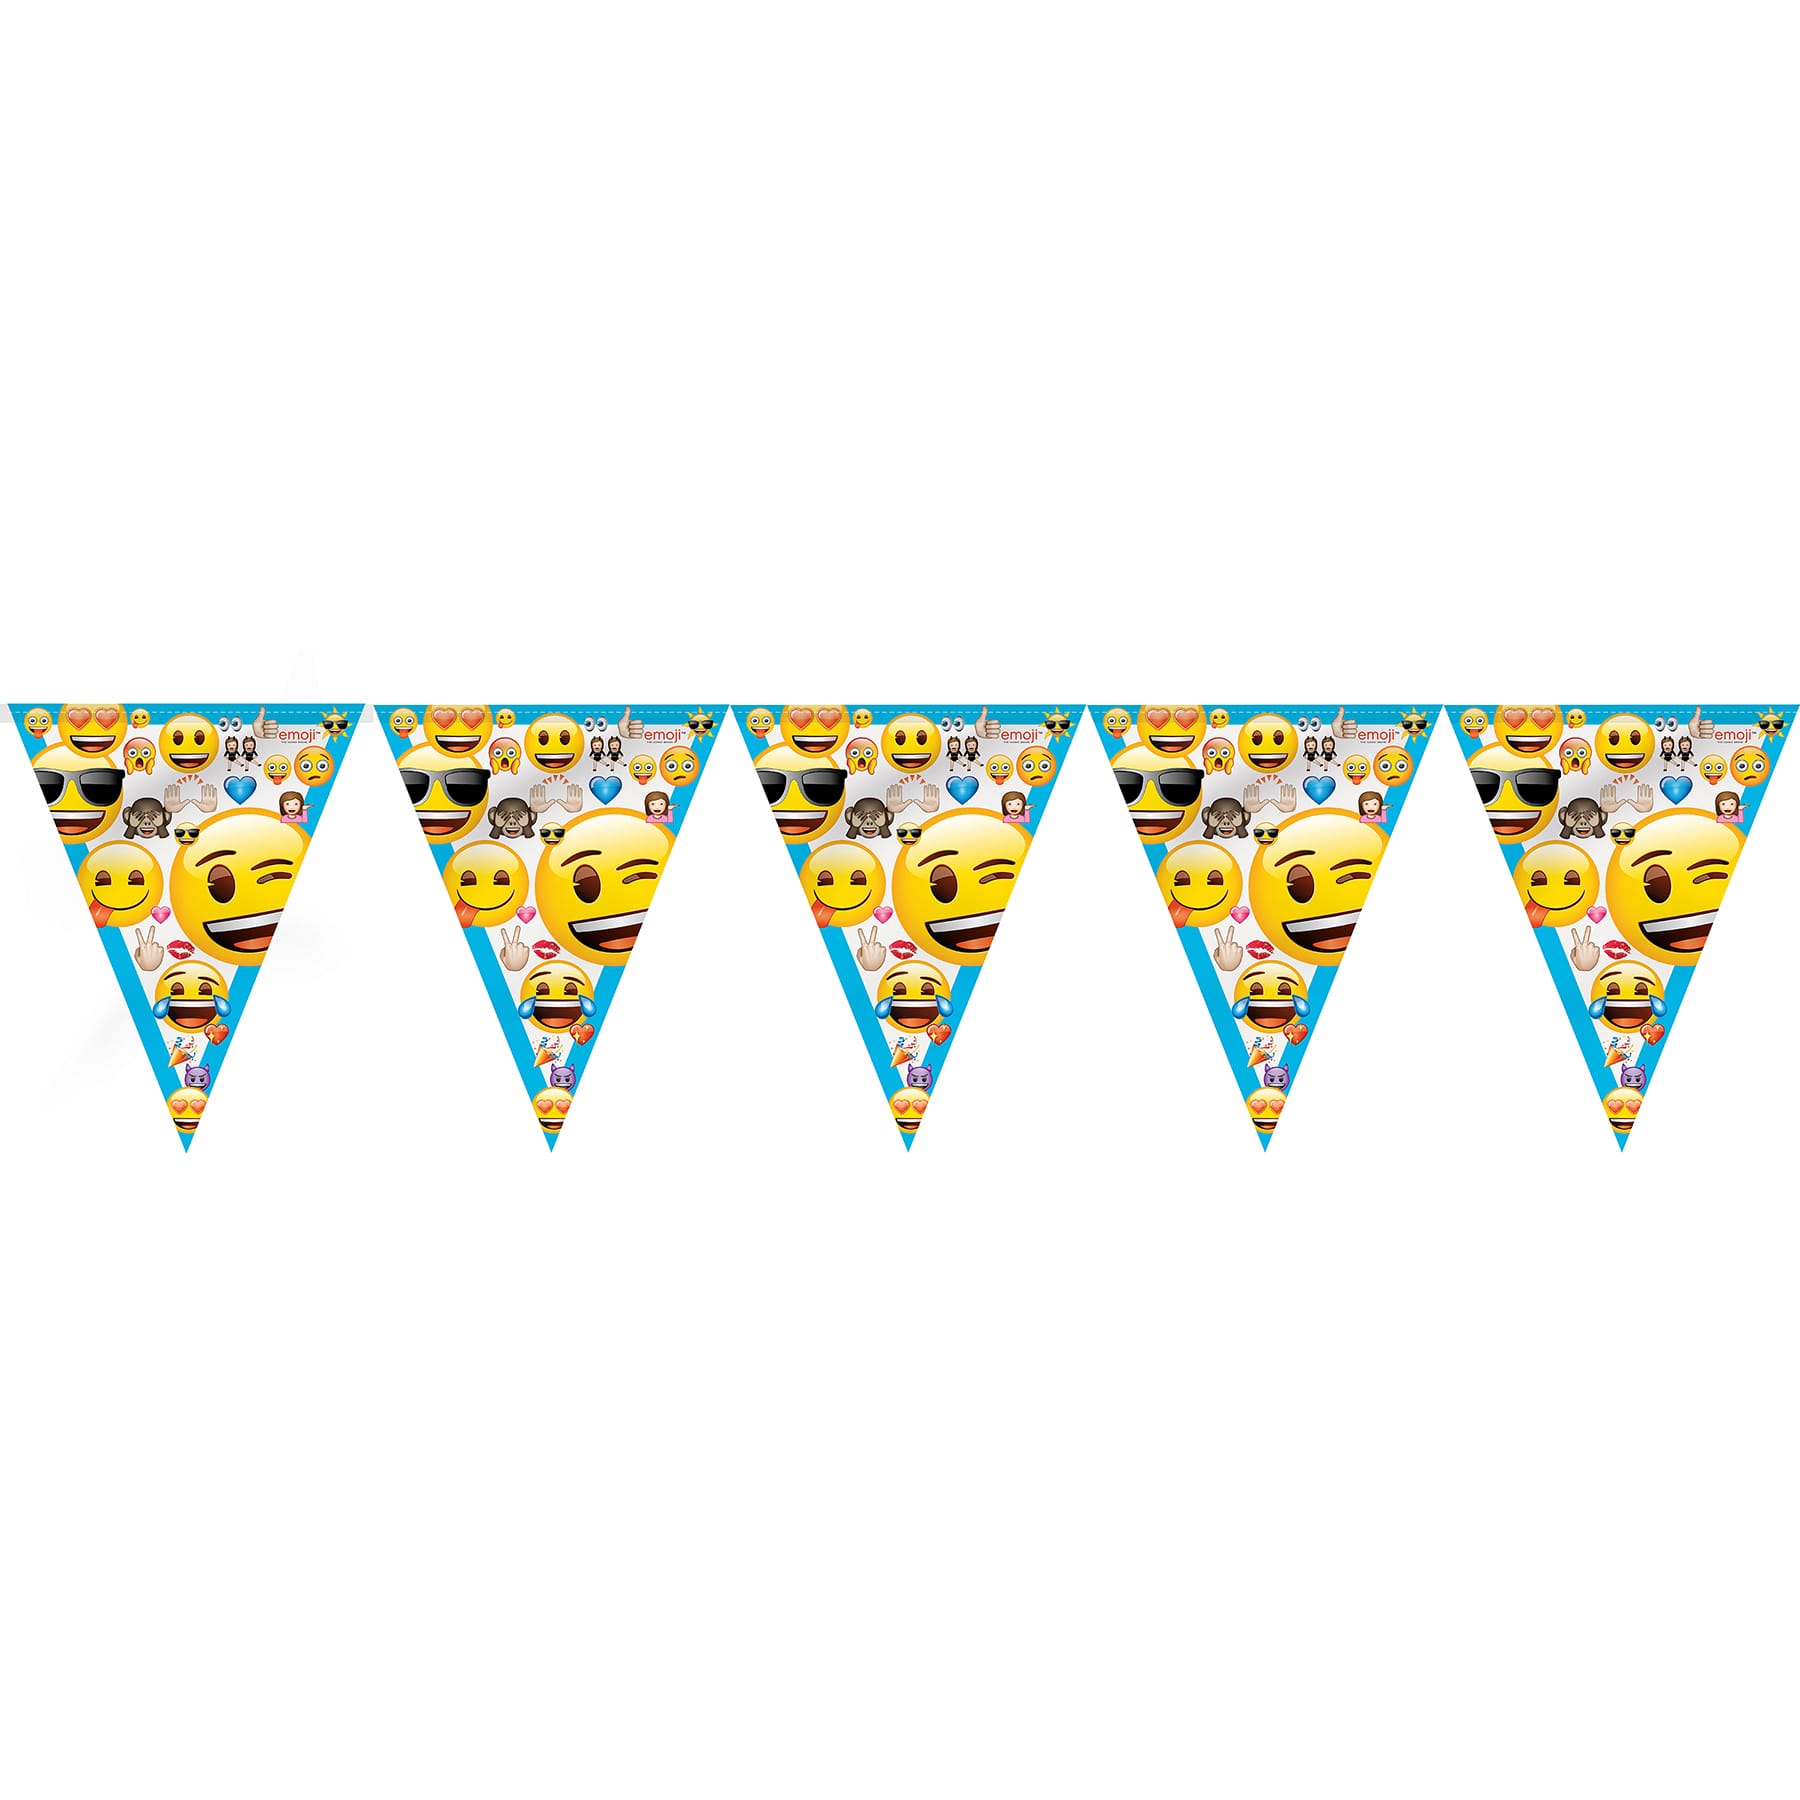 Brengen kapsel staart Emoji Party Decorating Kit | Emoji Party Decorations